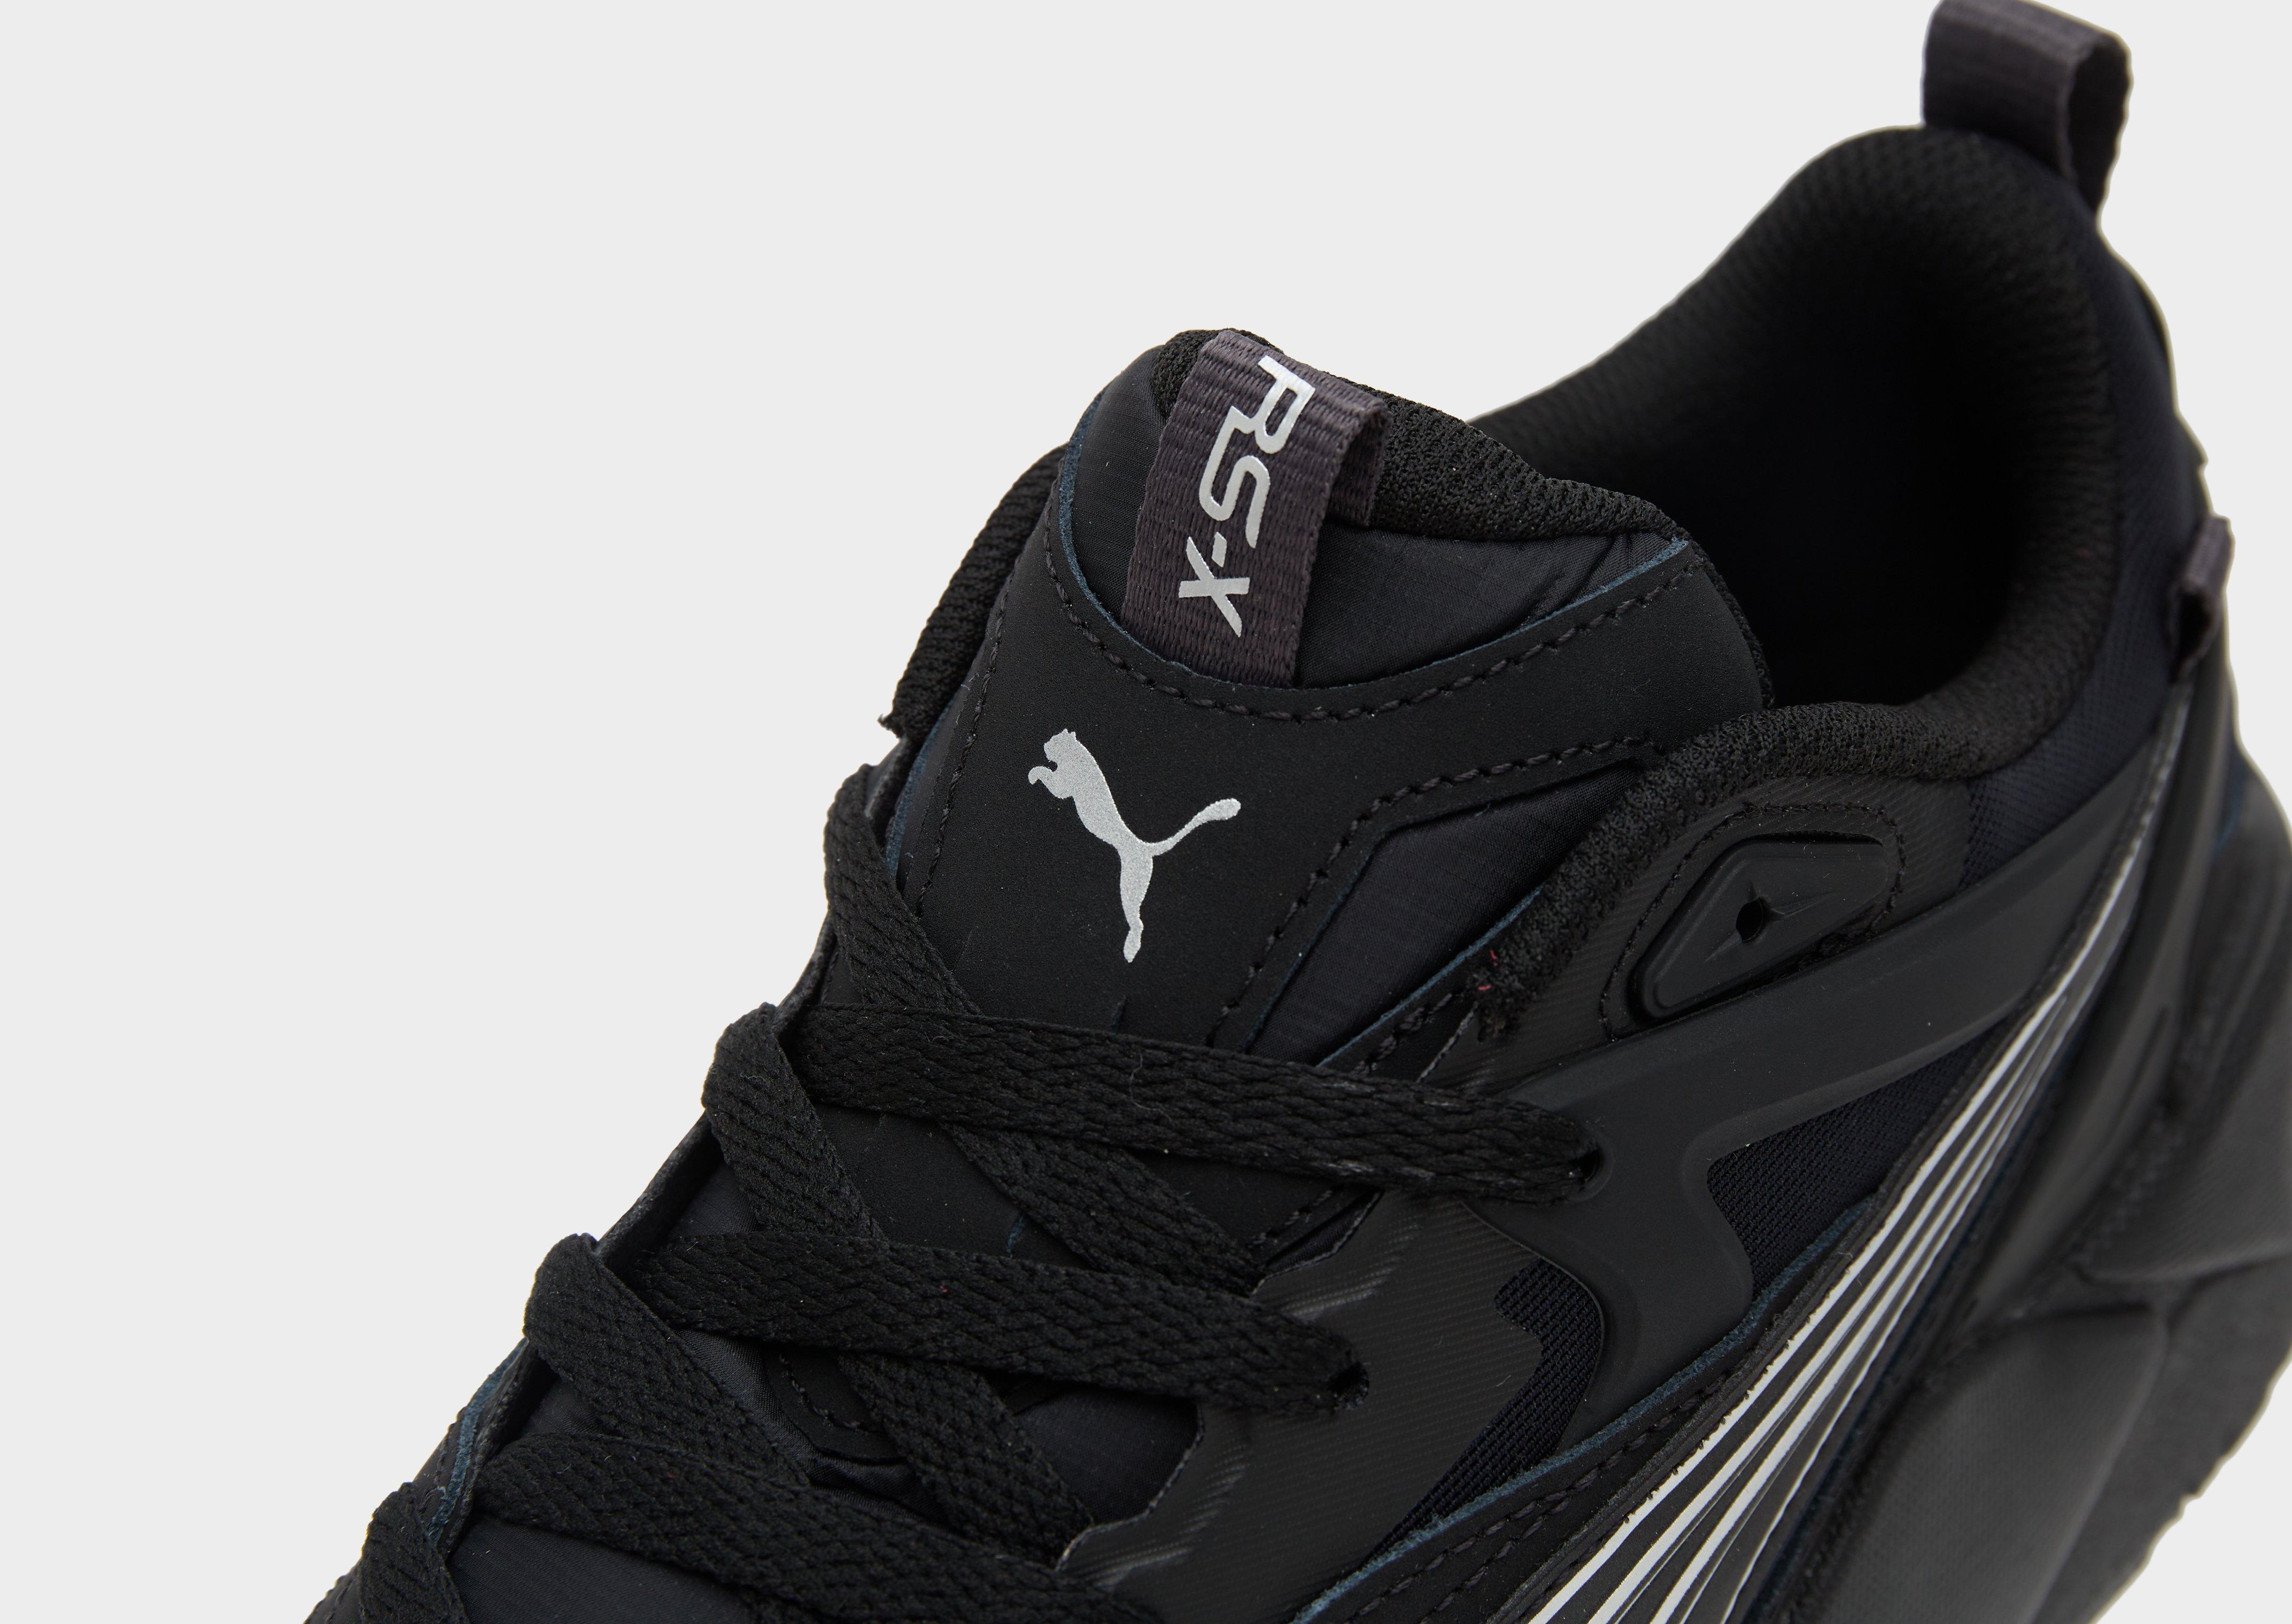 Zapatillas de deporte negras reflectantes RS-X Efekt de PUMA-Negro